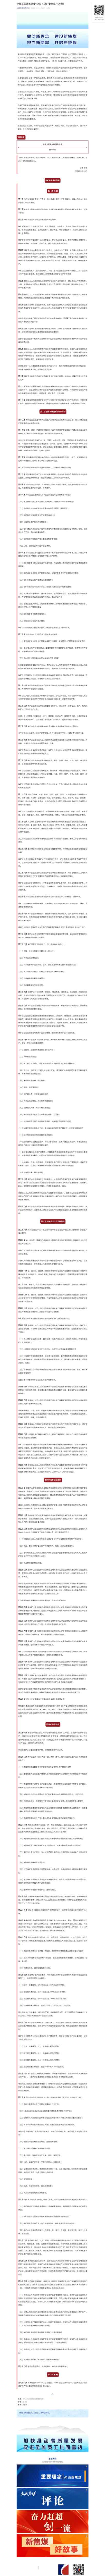 李强签署国务院令 公布《煤矿安全生产条例》.png